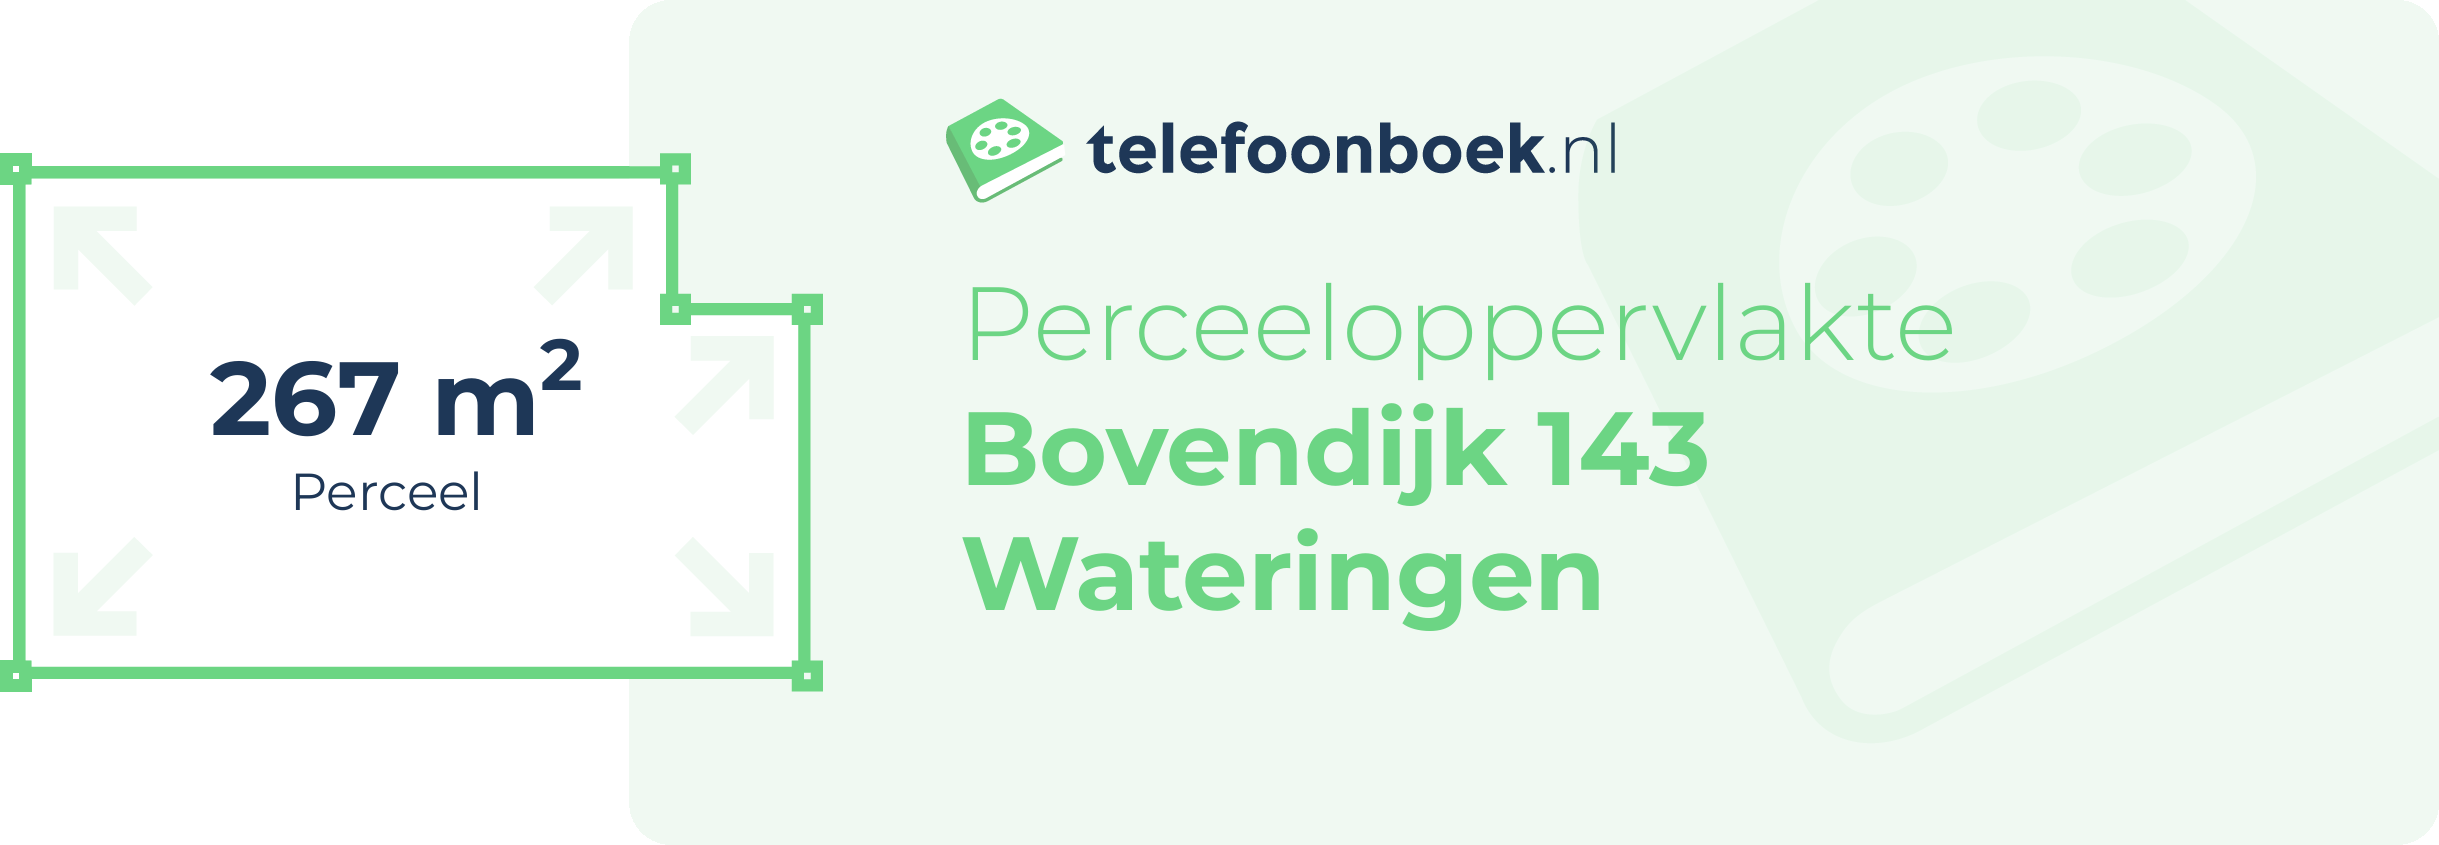 Perceeloppervlakte Bovendijk 143 Wateringen